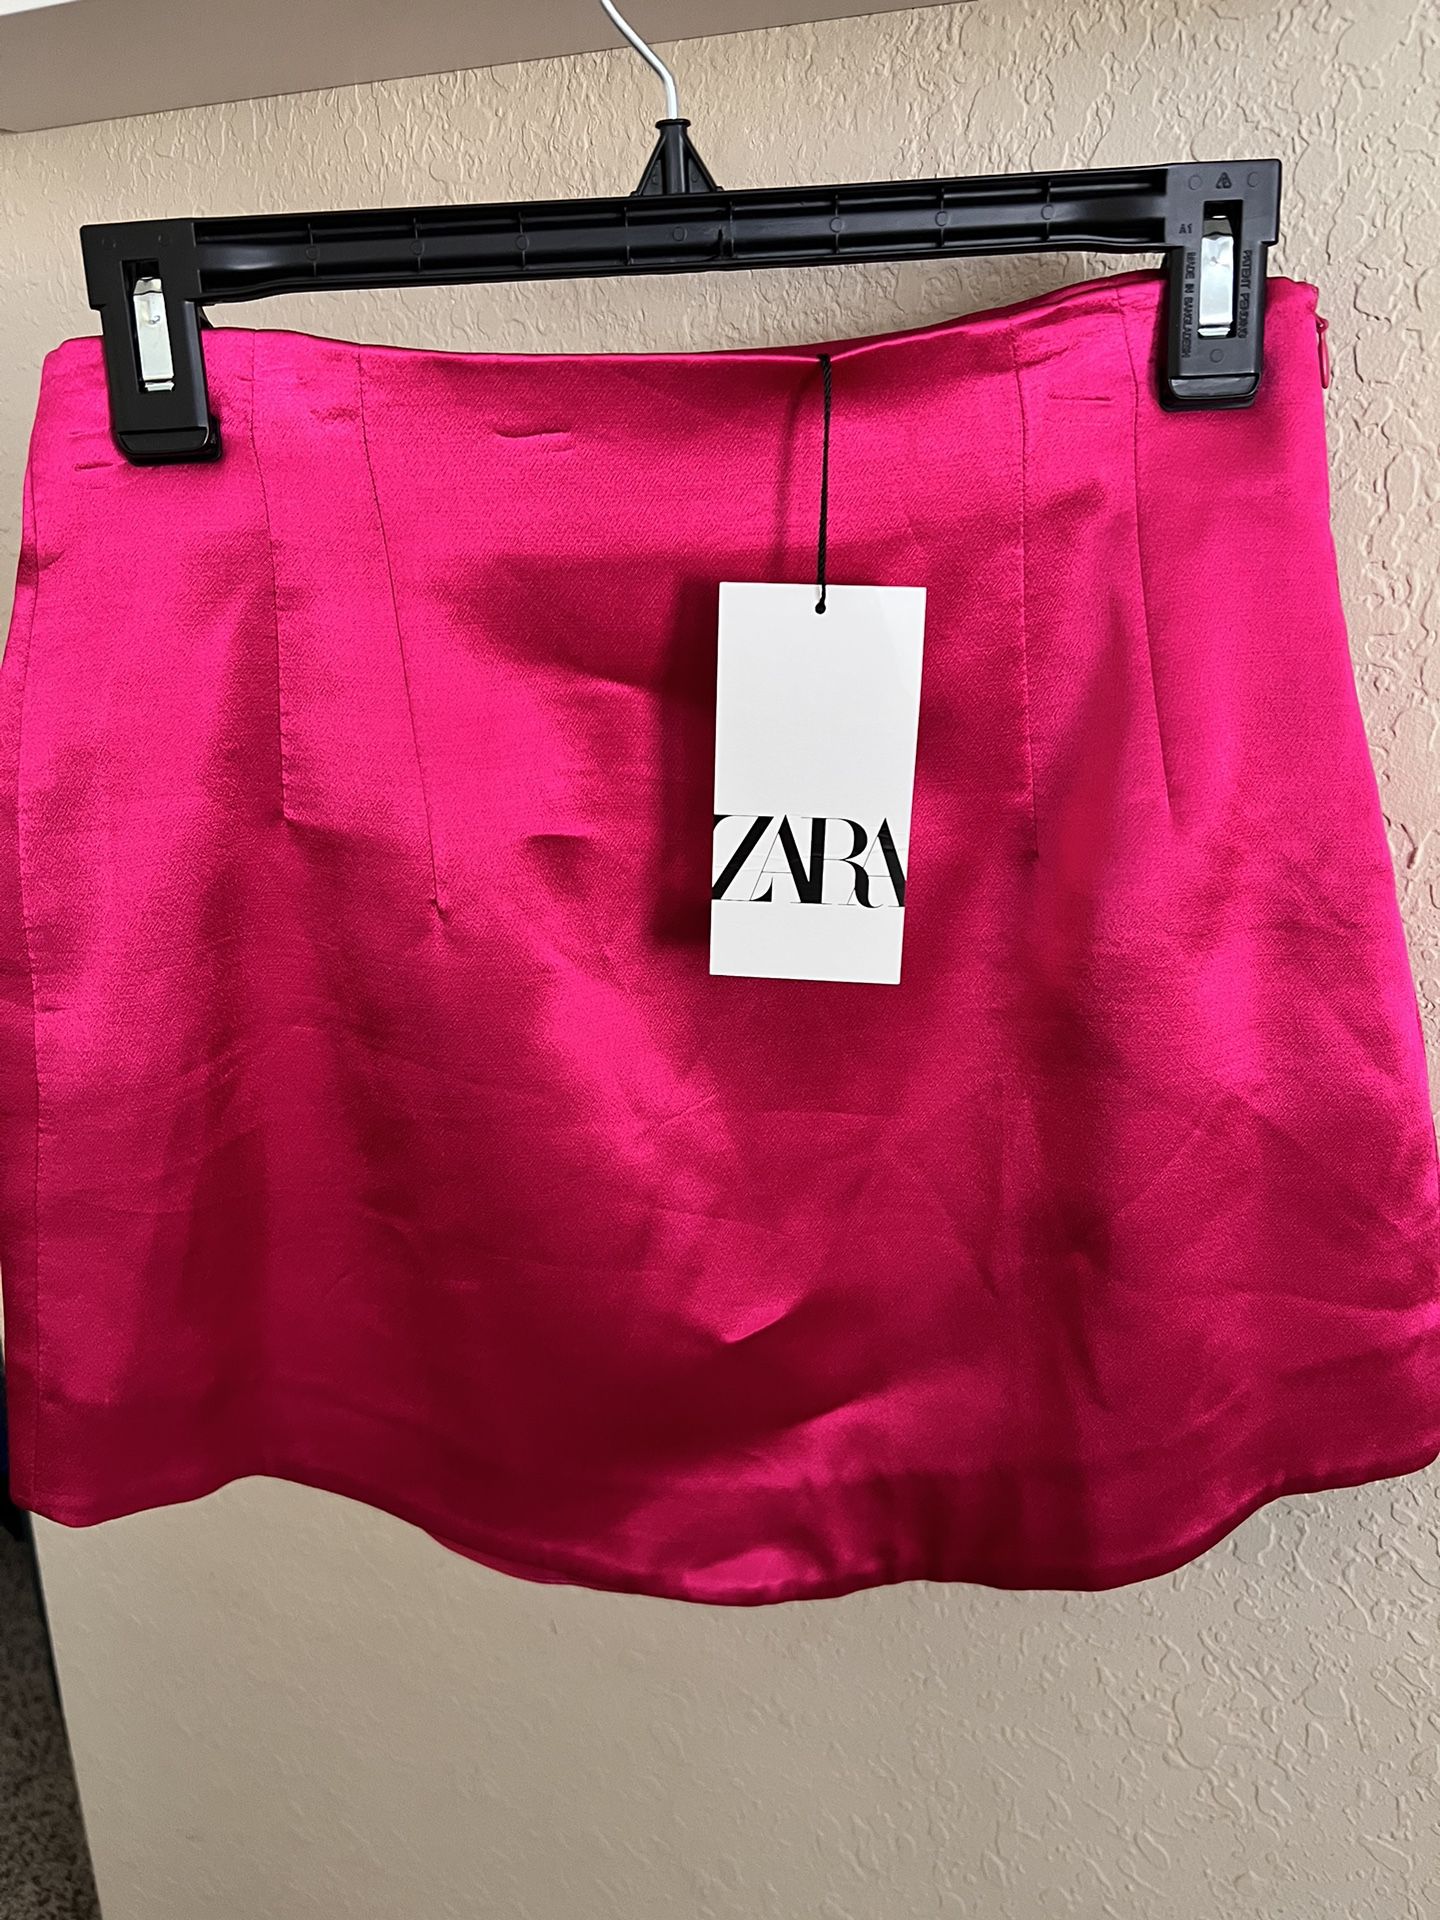 Zara Skirt NEW